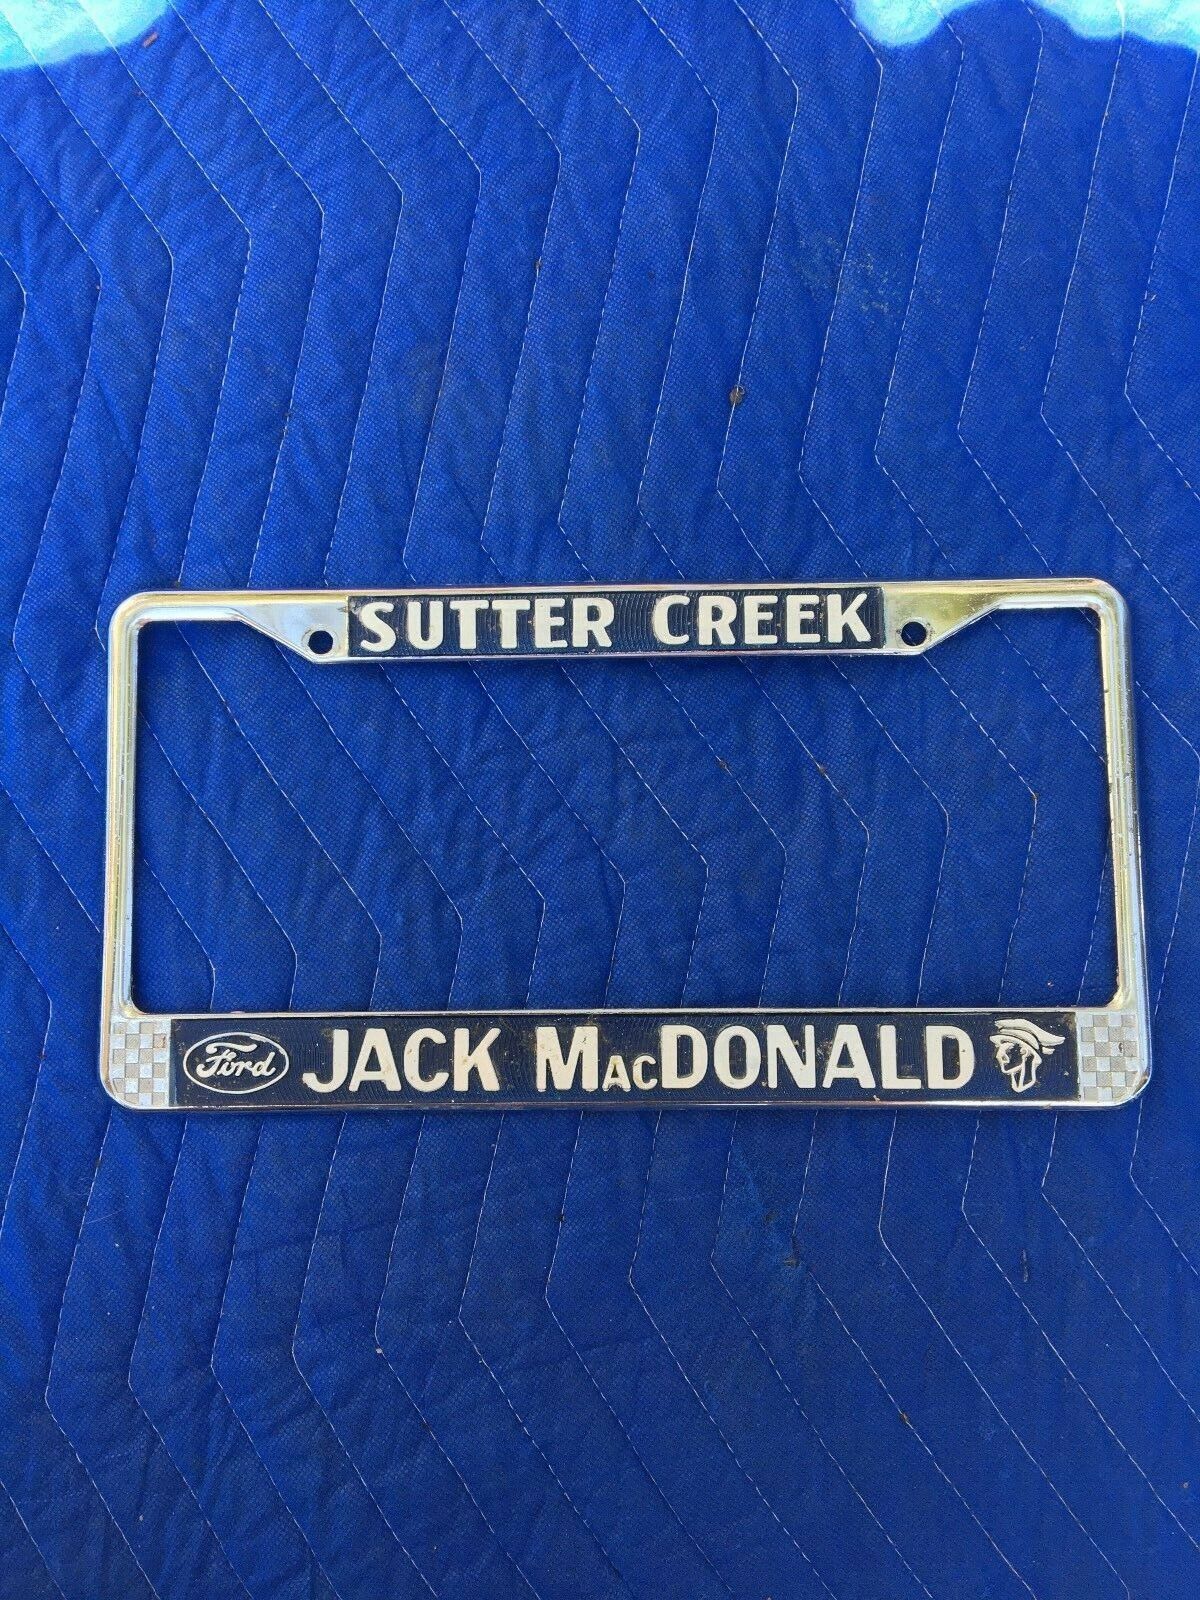 Sutter Creek Jack Mac Donald Ford Dealership License Plate Frame Holder 